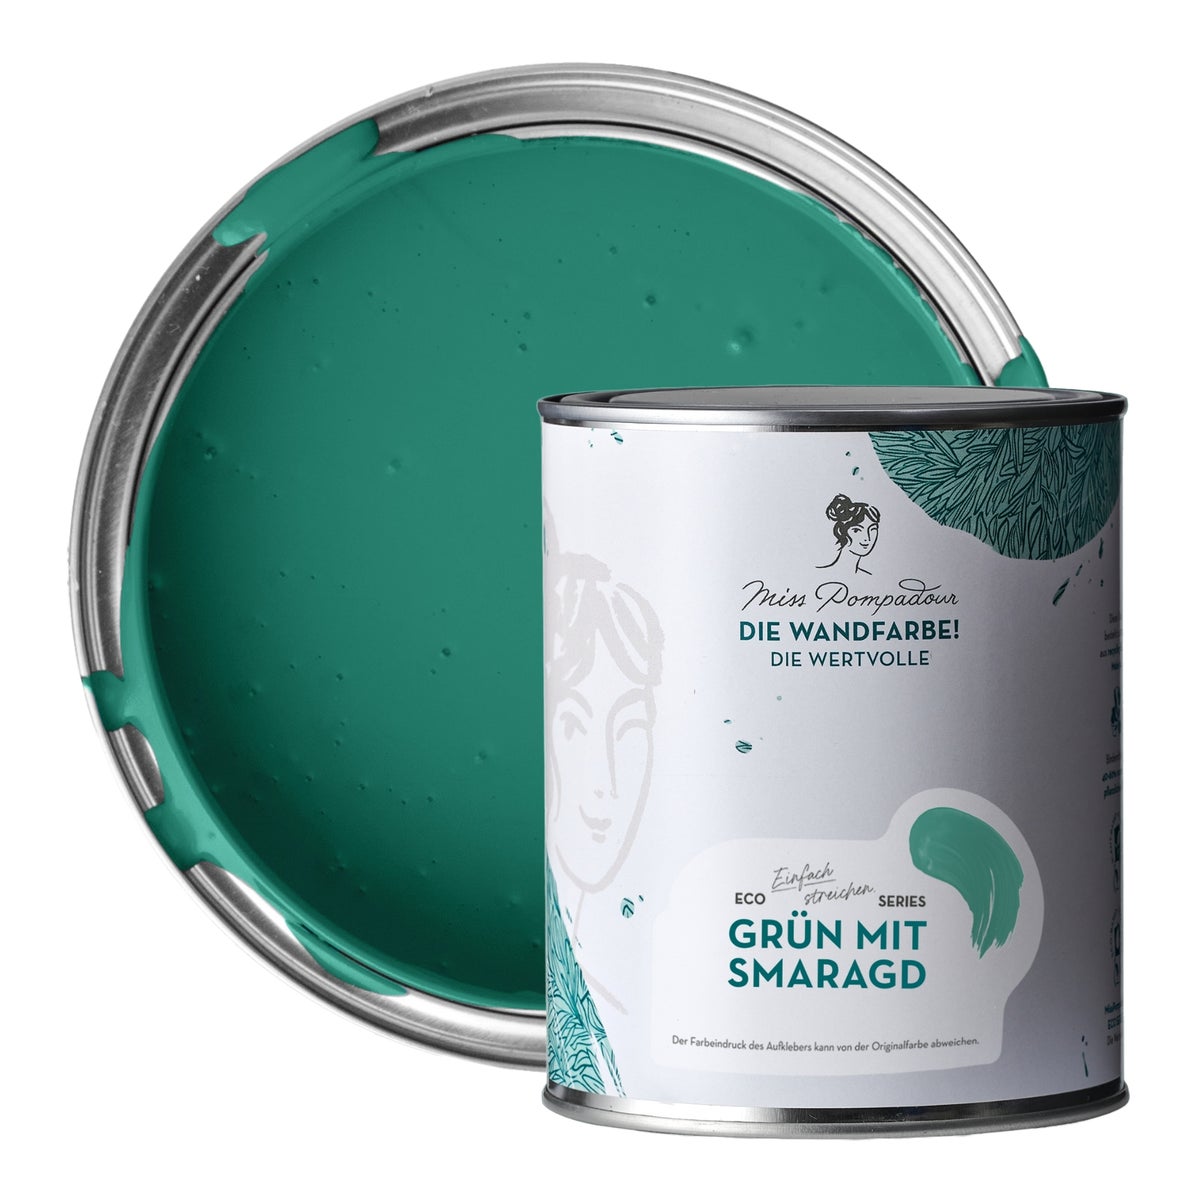 MissPompadour edelmatte Wandfarbe 1L Grün mit Smaragd - sehr hohe Deckkraft - geruchsneutrale, spritzfreie Farbe - atmungsaktive, wasserbasierte Innenfarbe/Deckenfarbe - Die Wertvolle